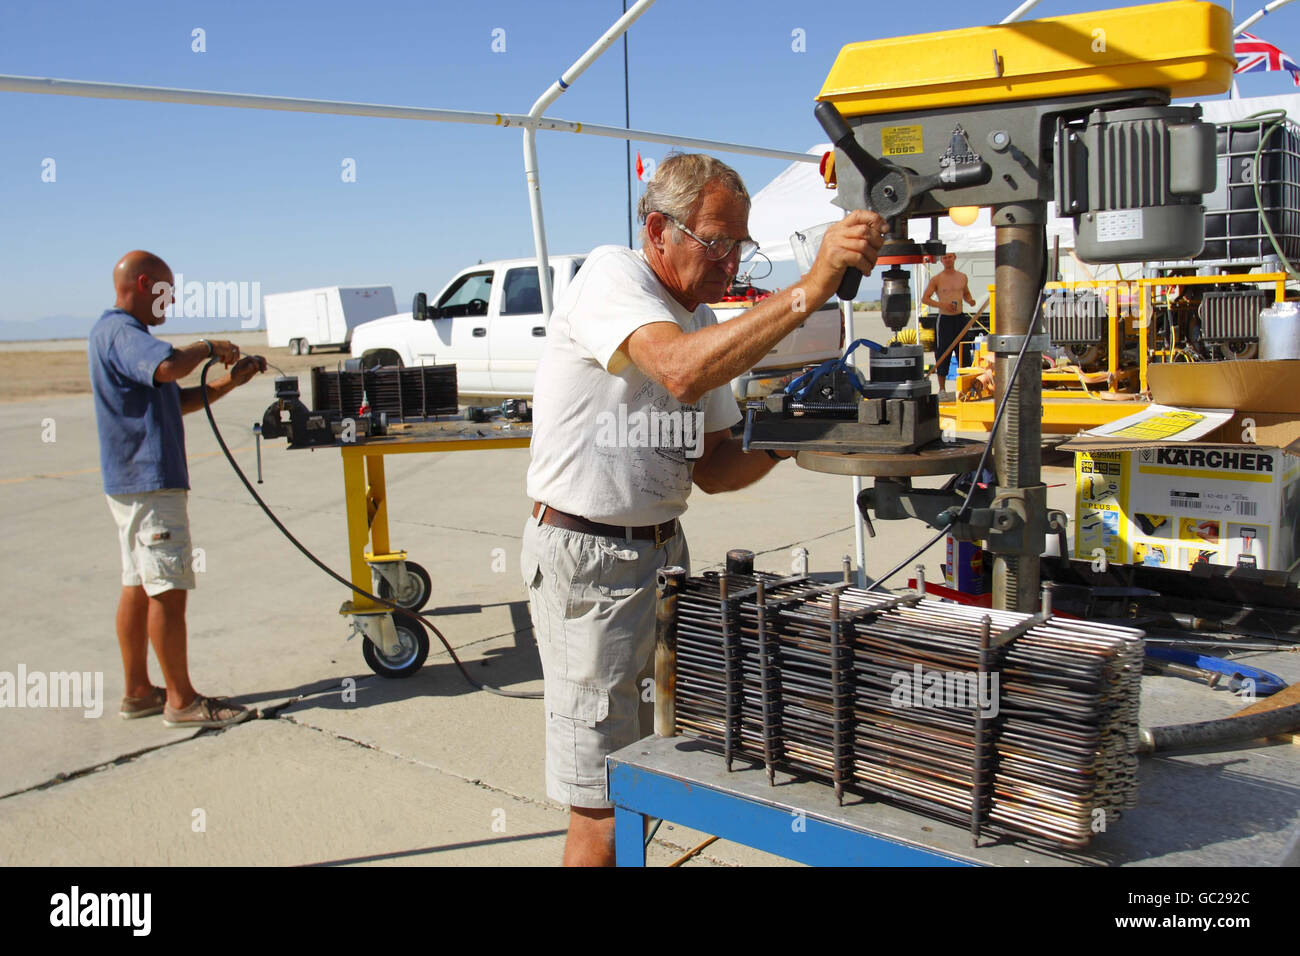 Ingenieure des britischen Steam Car Challenge Teams reparieren das Fahrzeug auf der Edwards Air Force Base in der Mojave-Wüste, Kalifornien, USA. Technische Probleme haben das Team mehrere Wochen lang angehalten, sodass eine Reihe von Versuchen, den 103 Jahre alten Geschwindigkeitsrekord zu brechen, abgebrochen werden mussten. Das Team wird morgen für den nächsten Versuch zurückkehren. Stockfoto